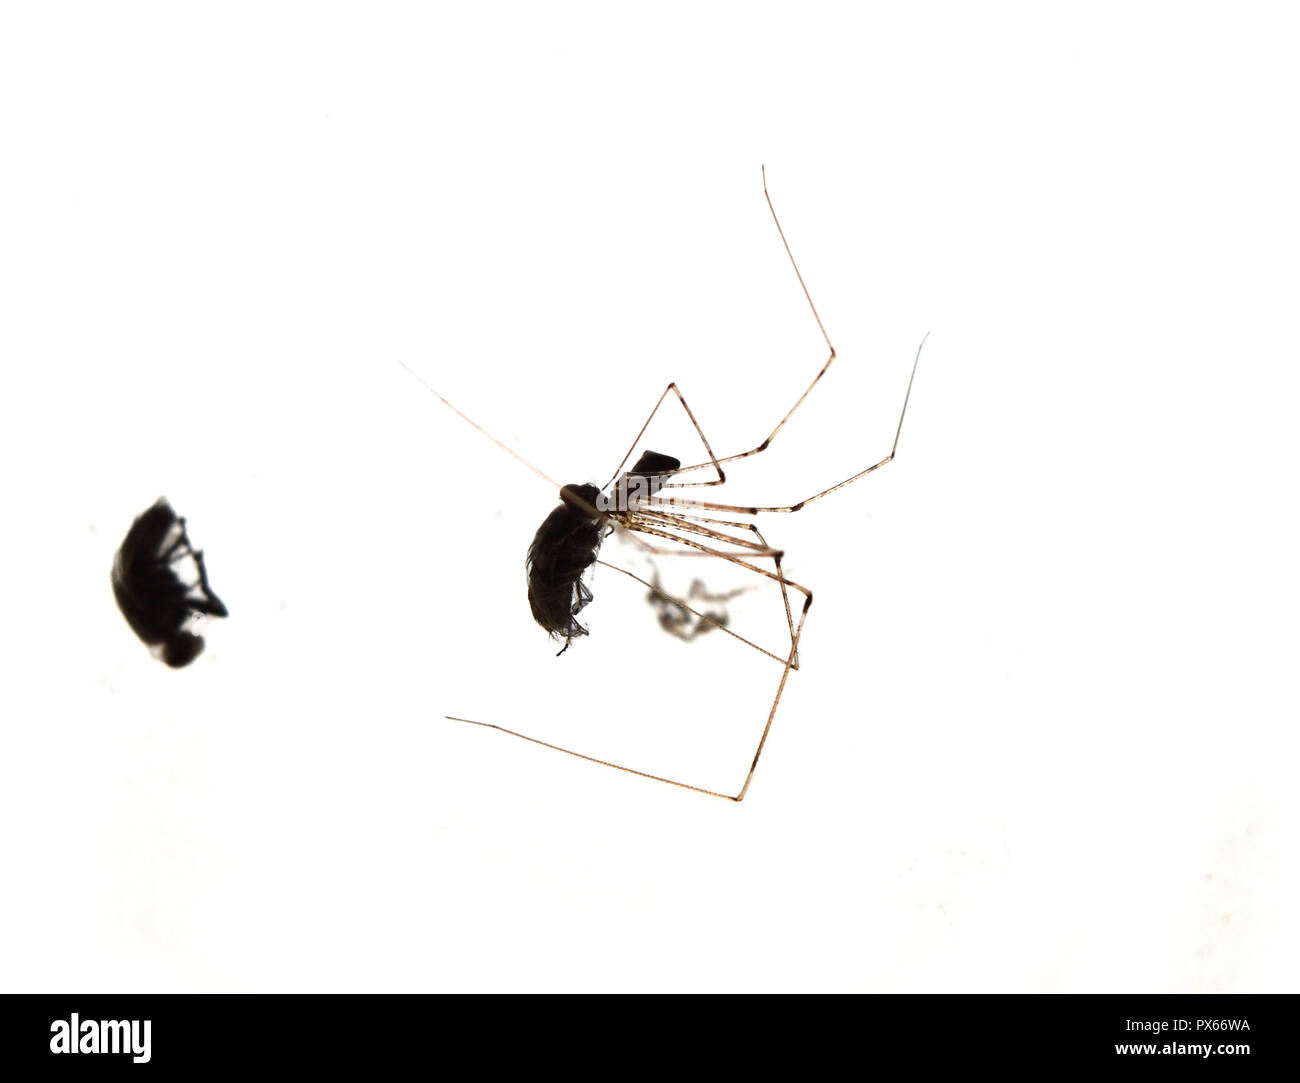 Tödliche Kuss von insect Hunter, Spider essen eine Fliege im Spinnennetz auf weißem Hintergrund eingeschlossen, Leben geht schief und endet mit schweren Schäden Stockfoto